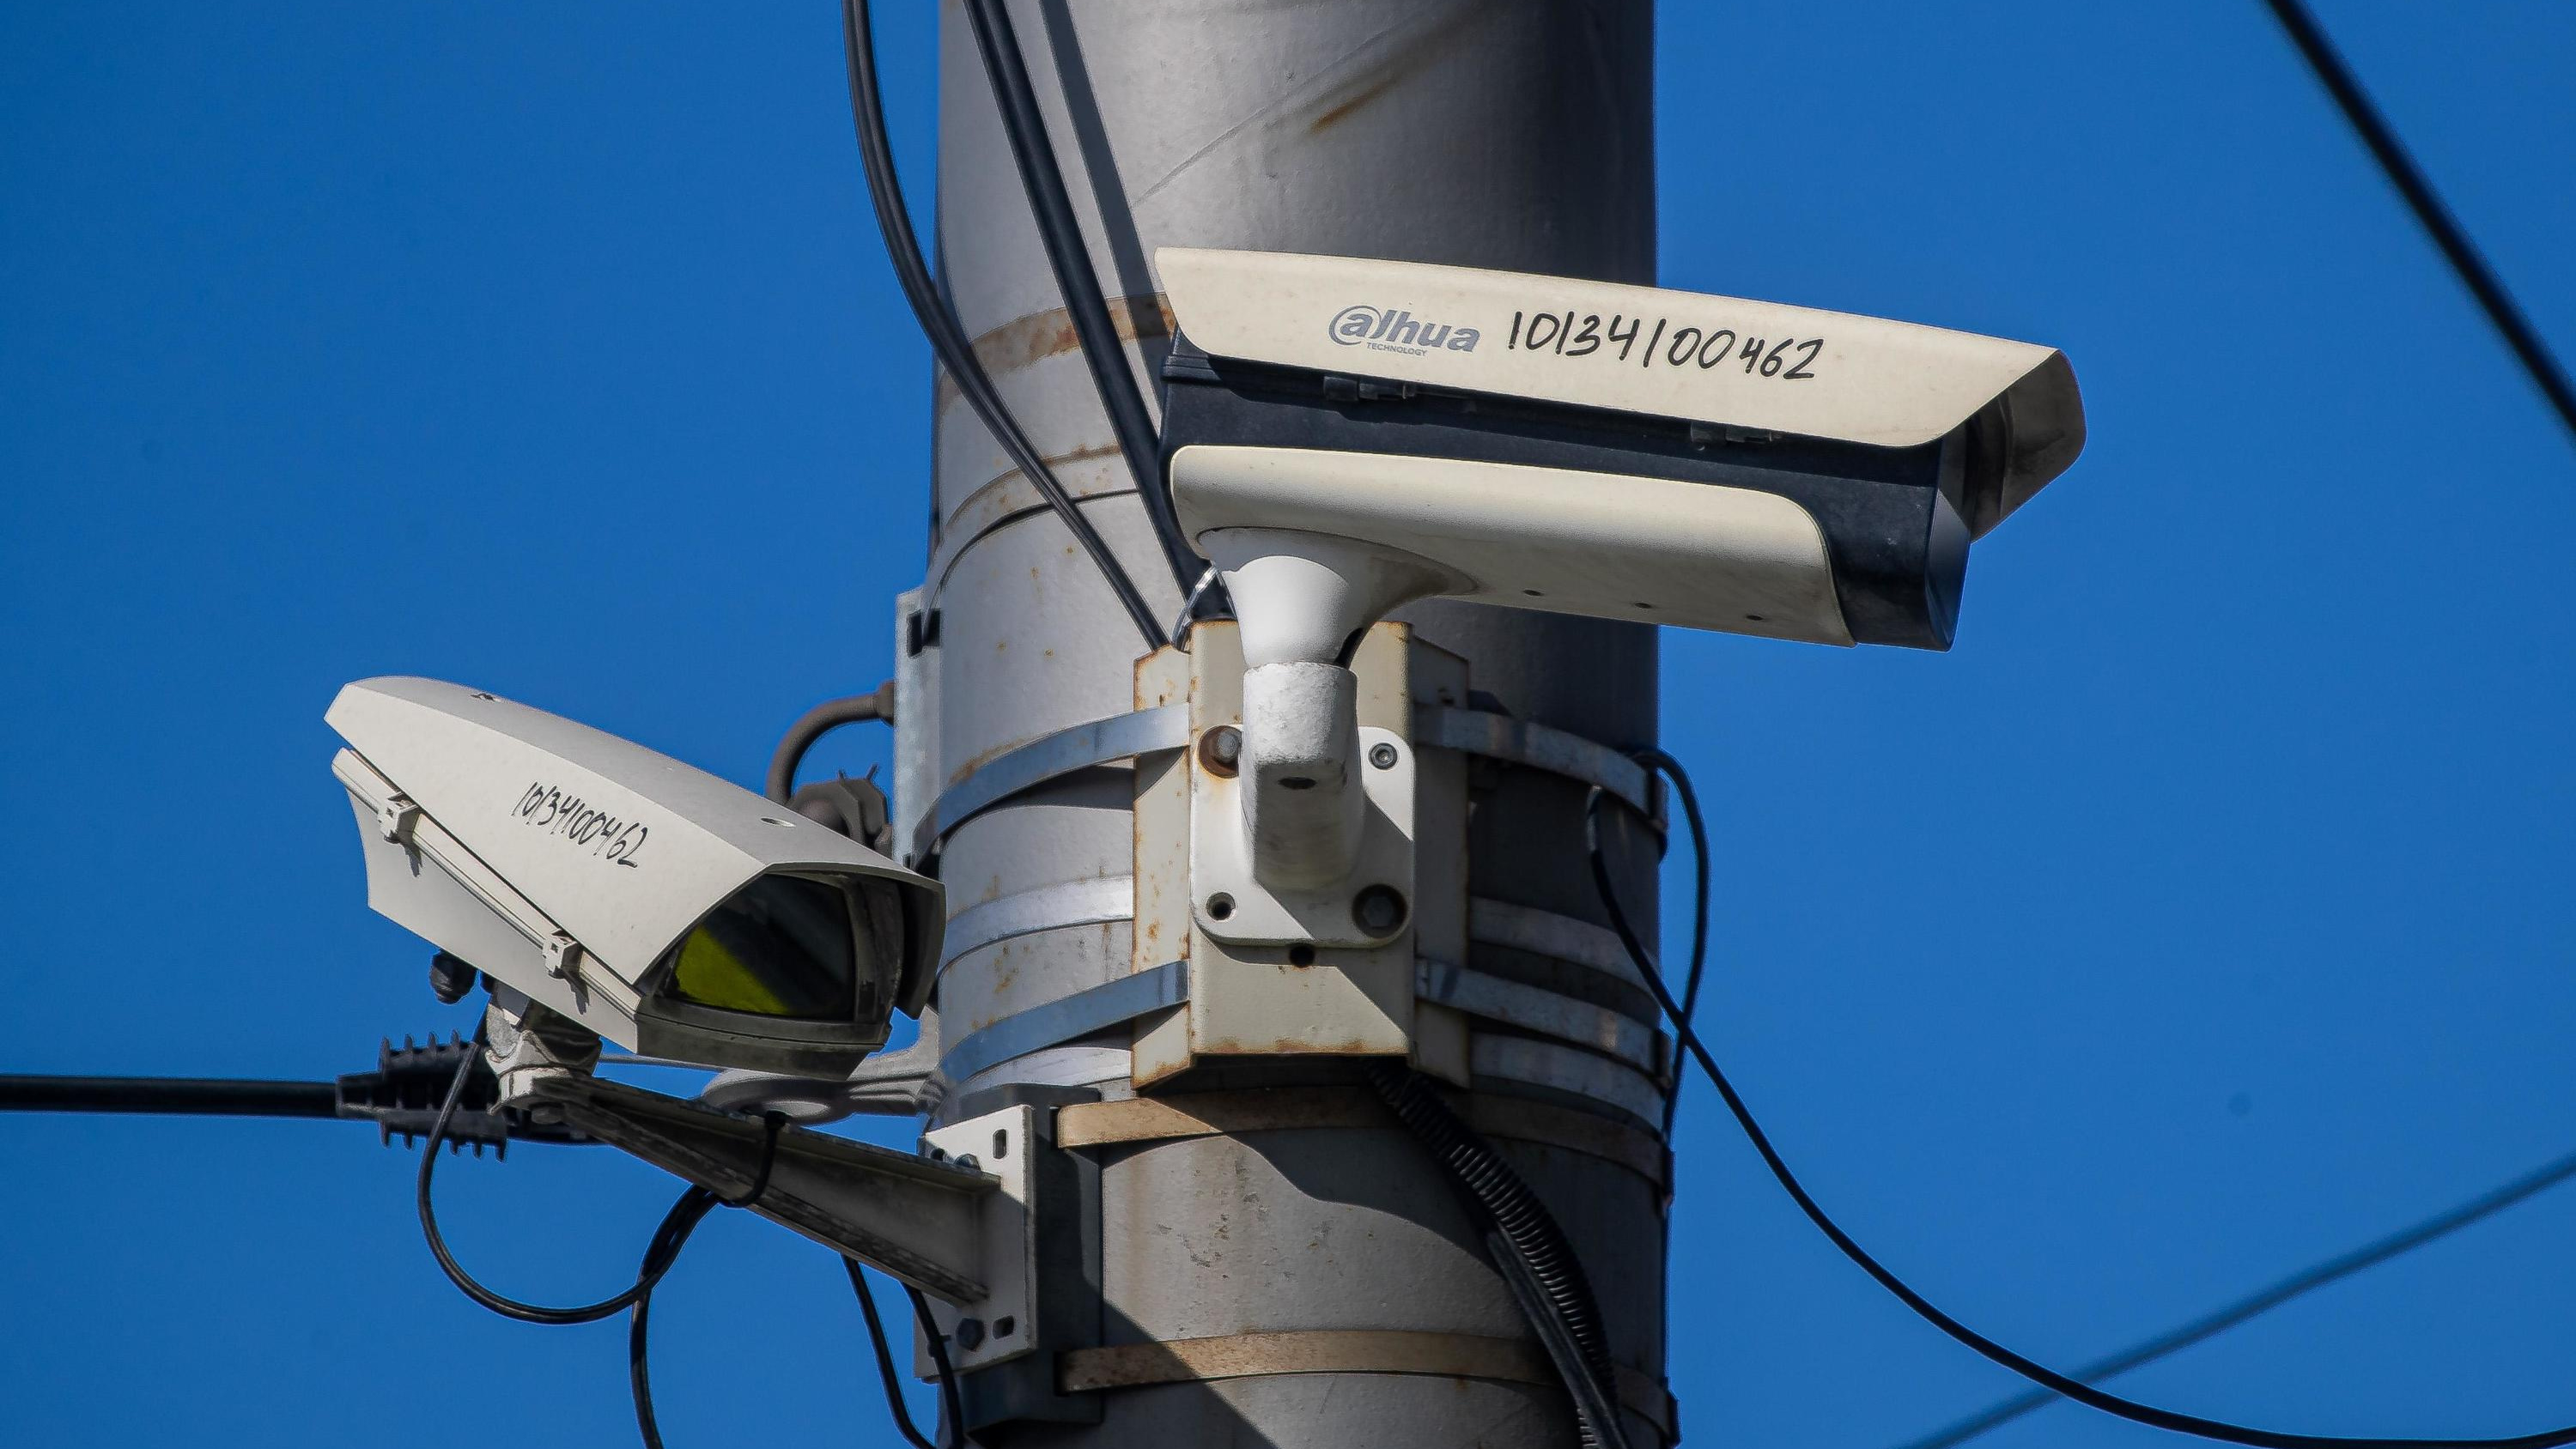 Камеры контроля ПДД продолжают работать в Чите, несмотря на конец договора по их обслуживанию